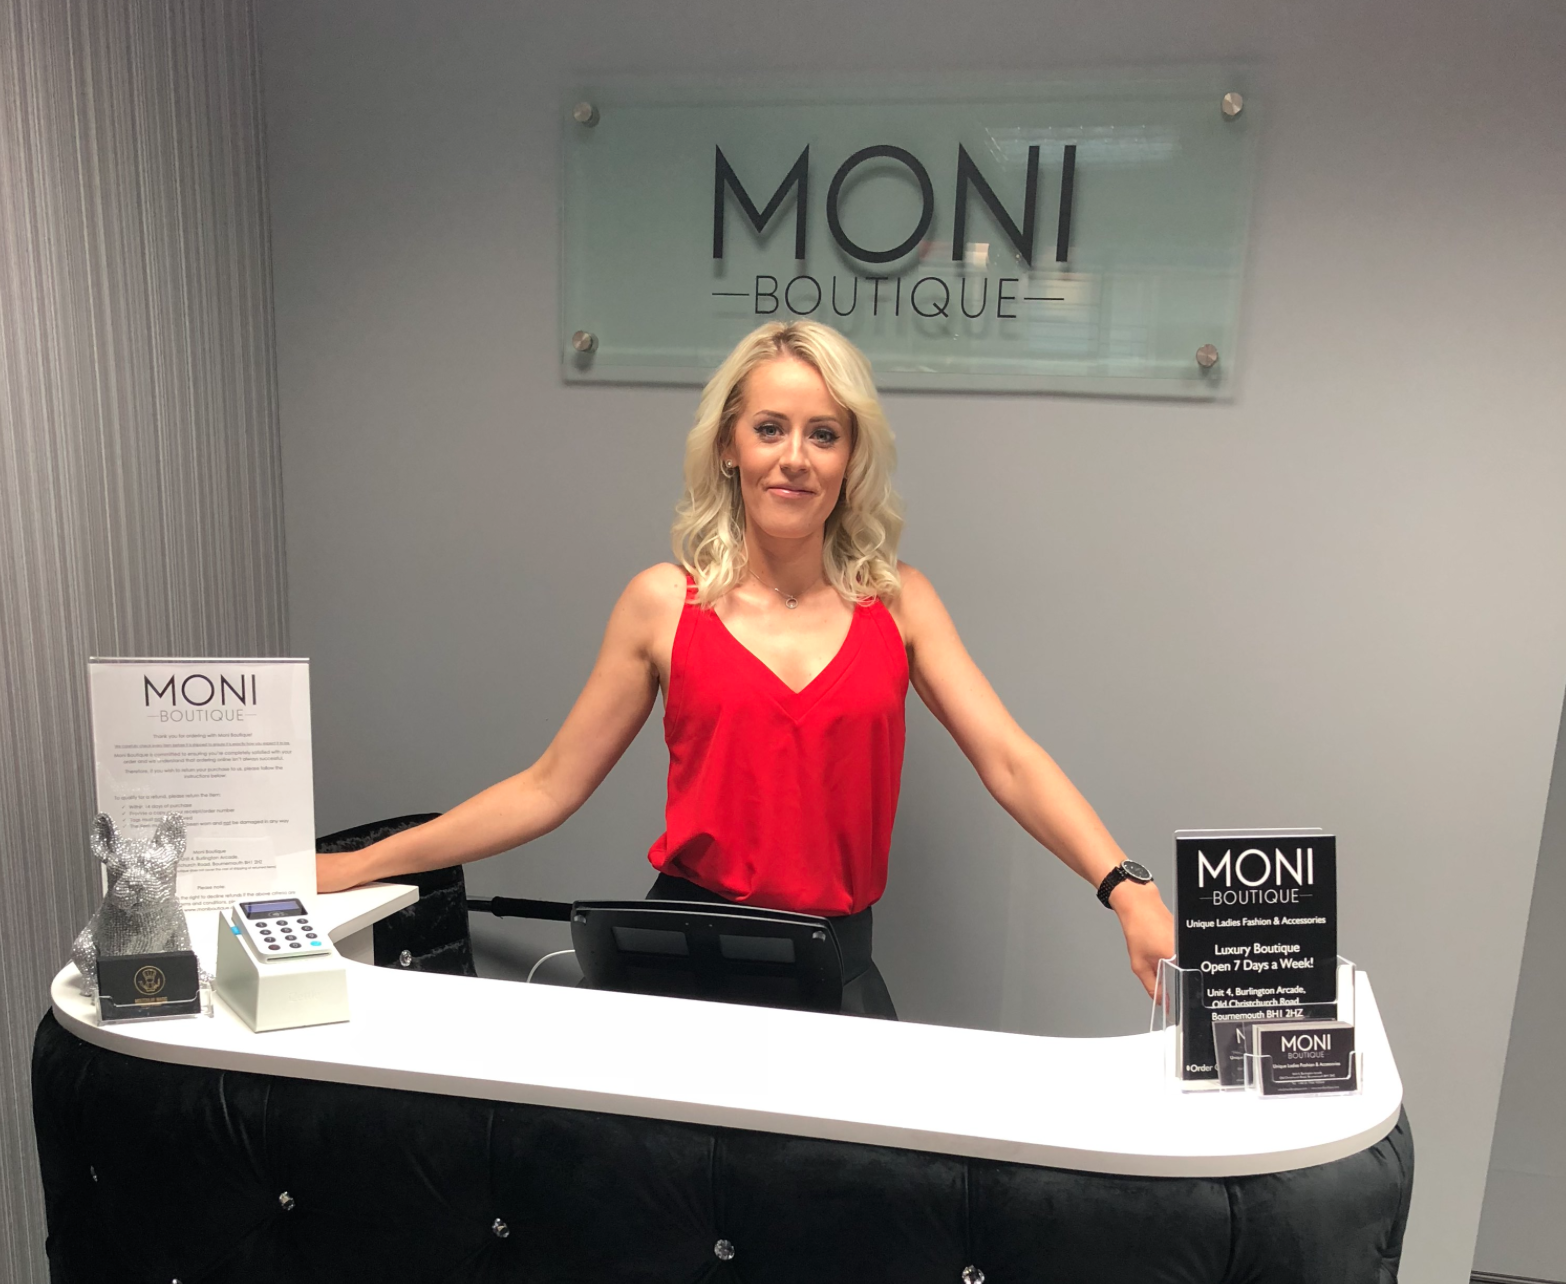 Meet MONI Boutique owner, Monika